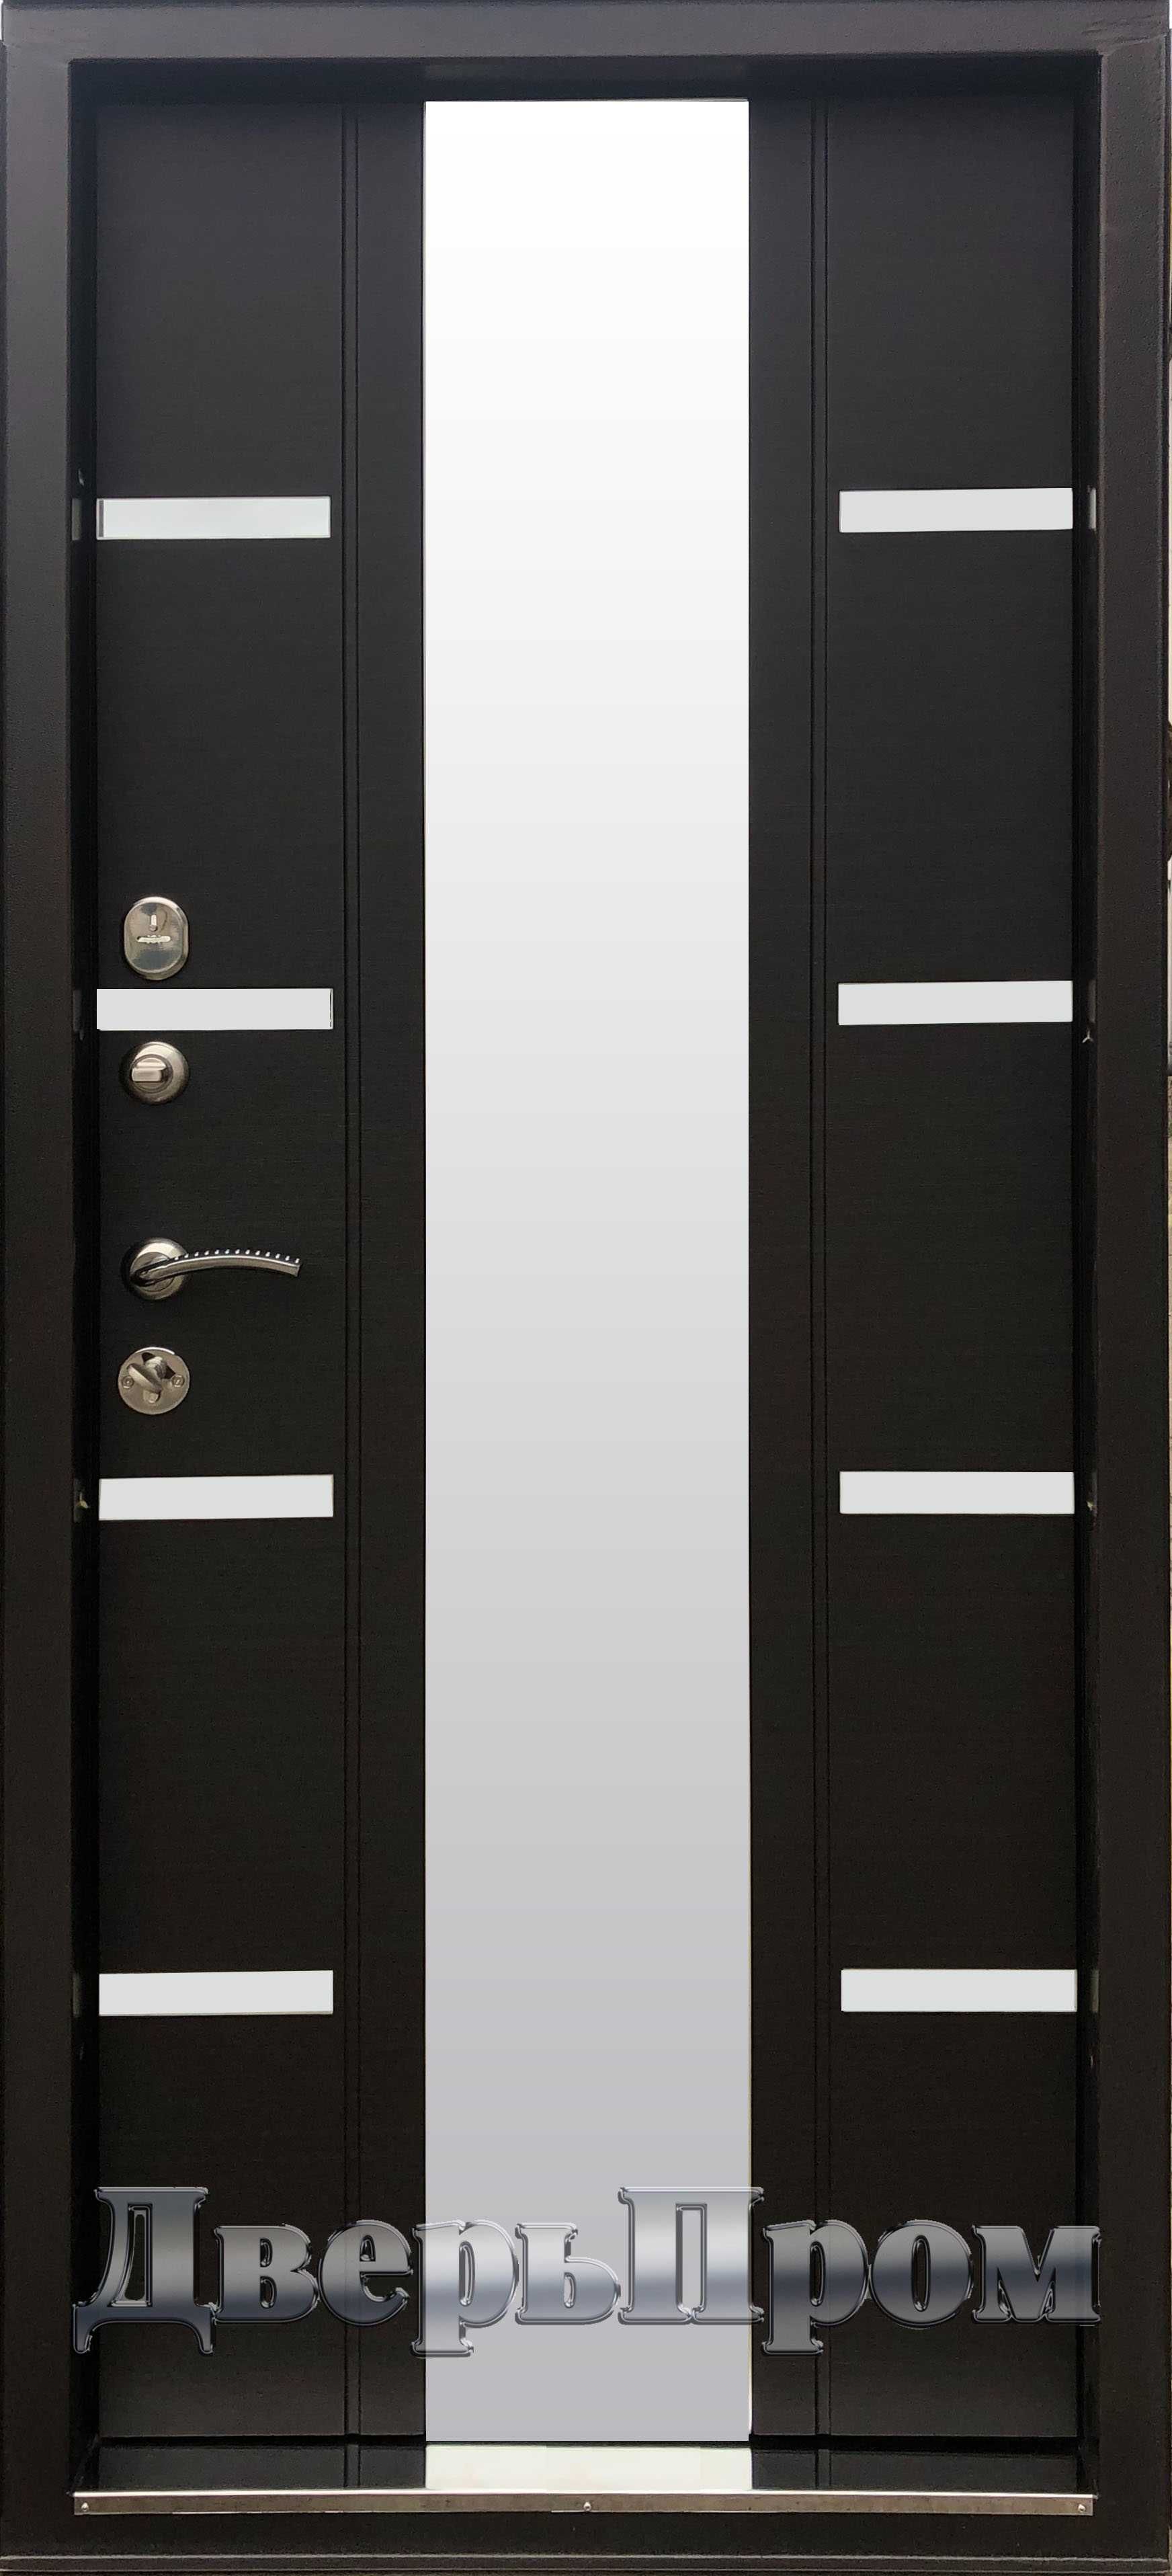 Трёхконтурные входные металлические двери "ДверьПром"